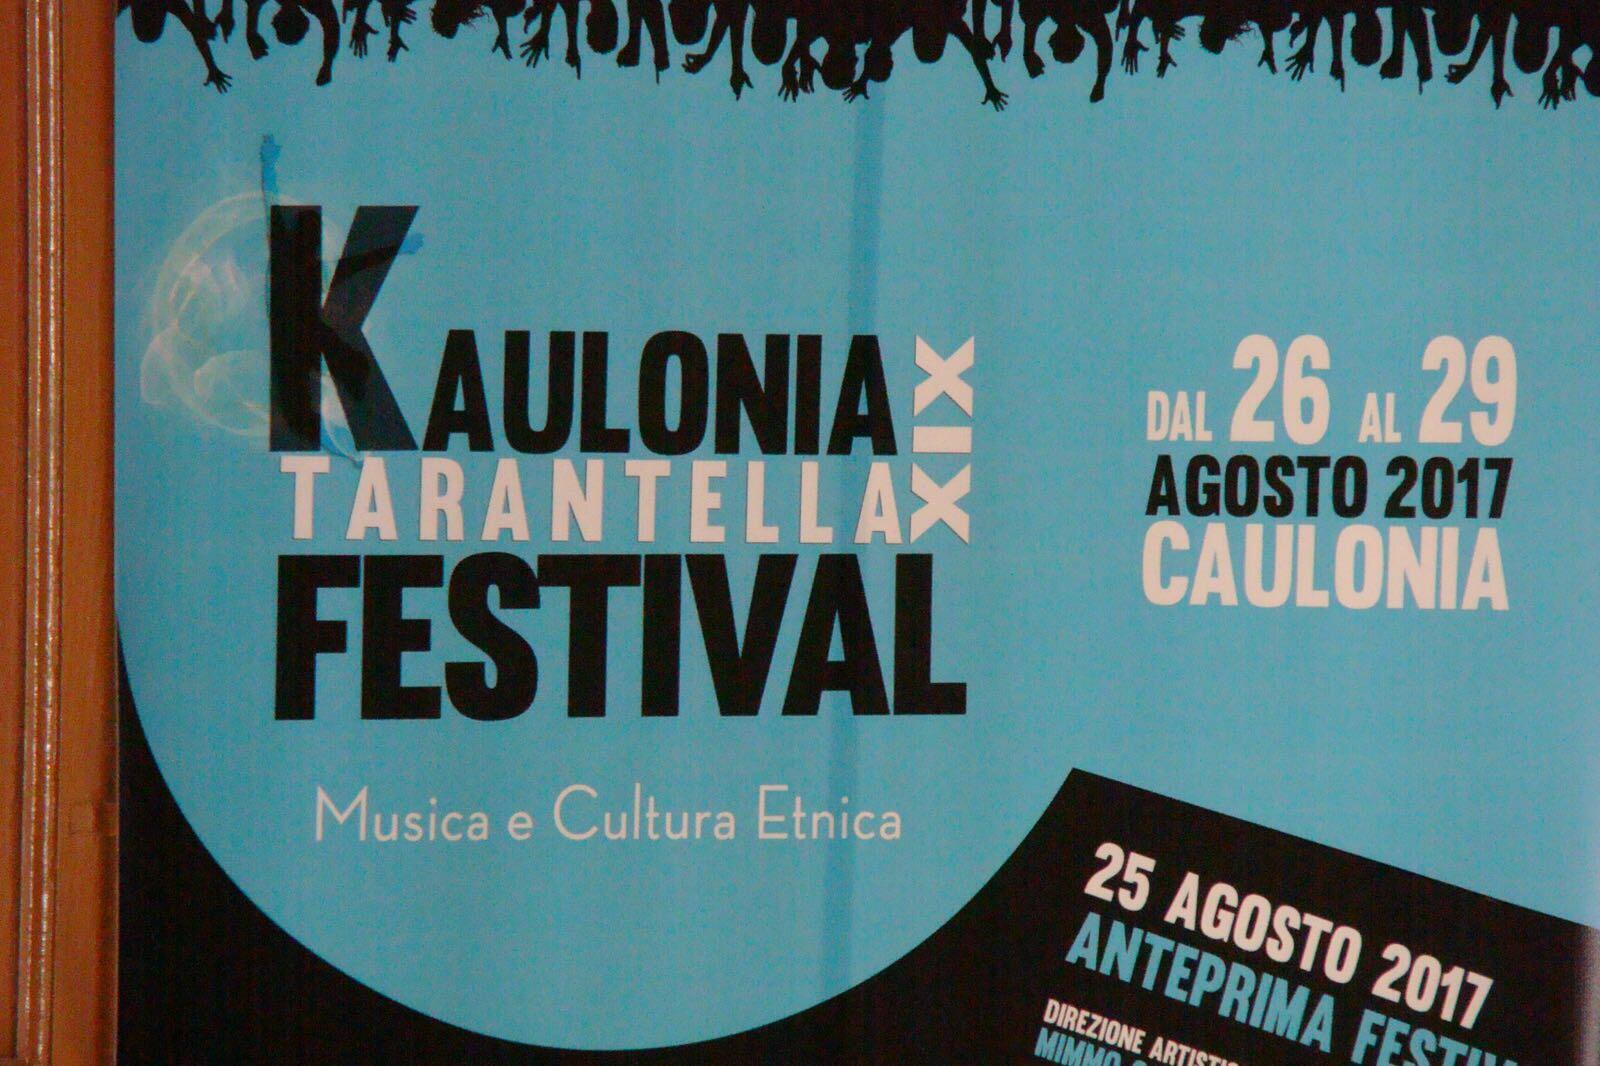 Presentato questa mattina il programma della XIX edizione del Kaulonia Tarantella Festival